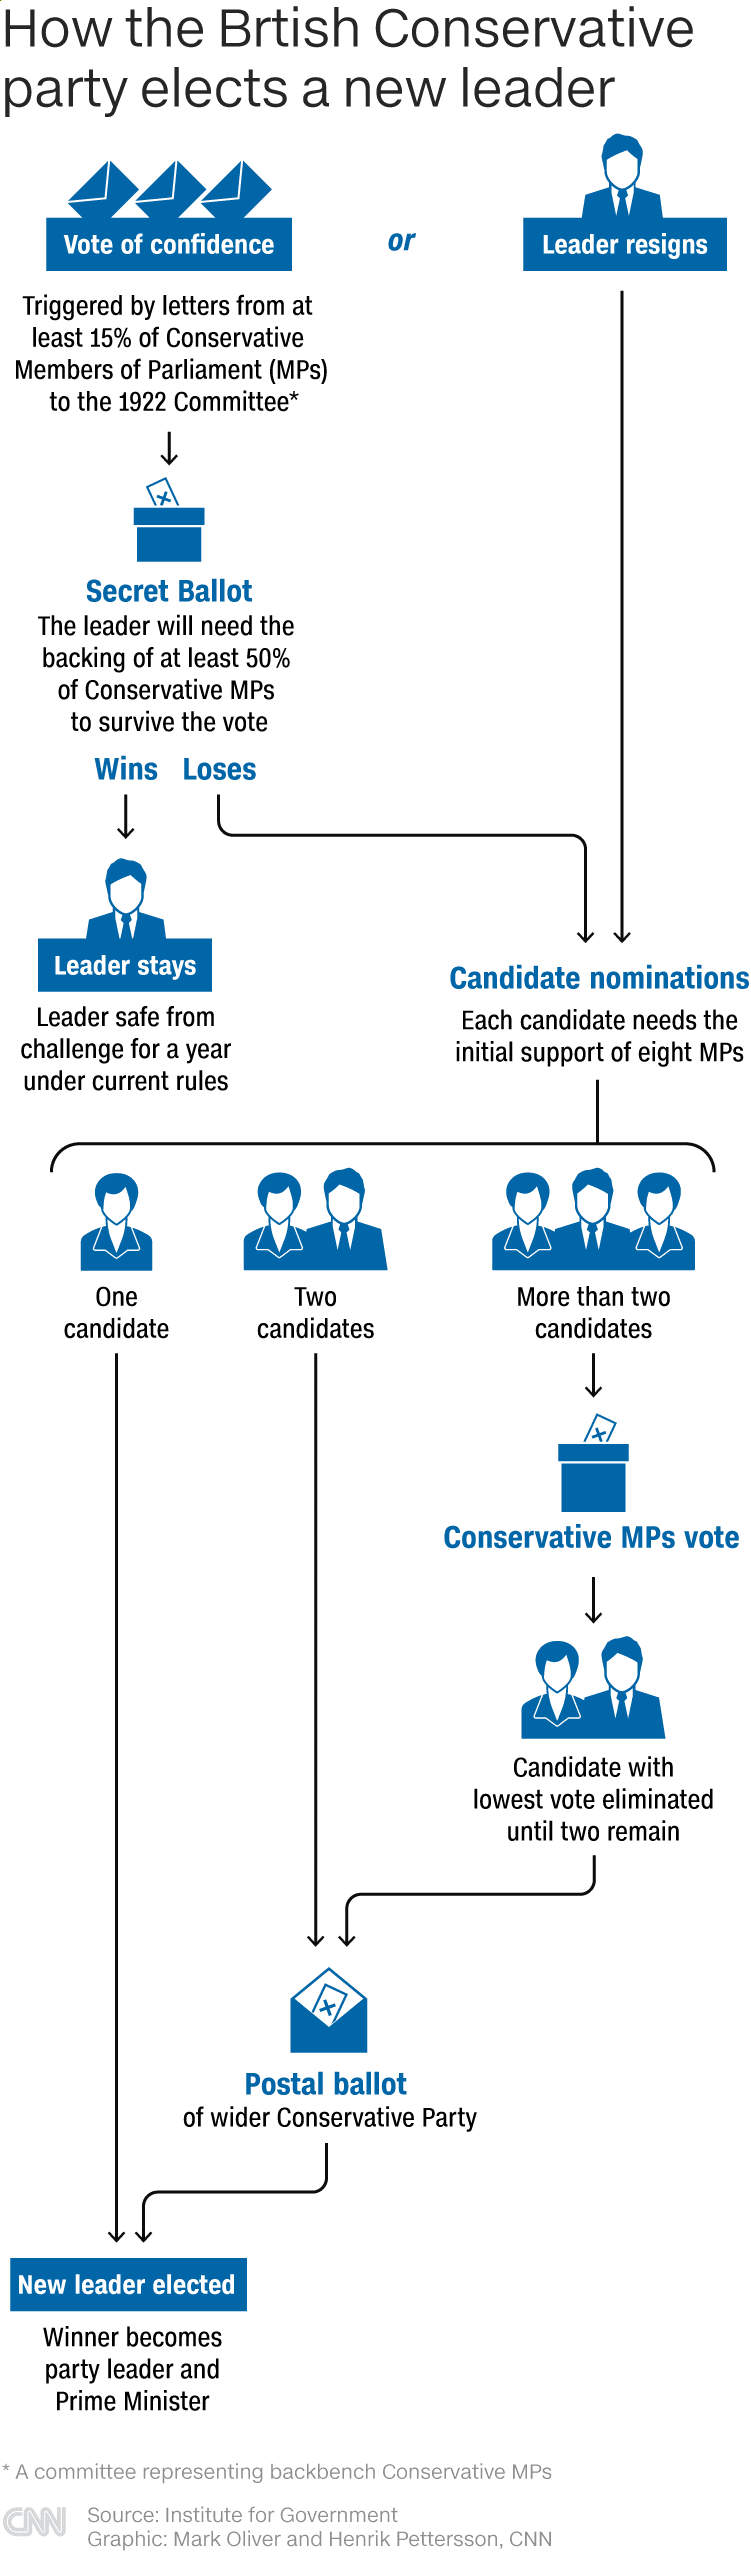 Hoe de Britse Conservatieve Partij een nieuwe leider kiest